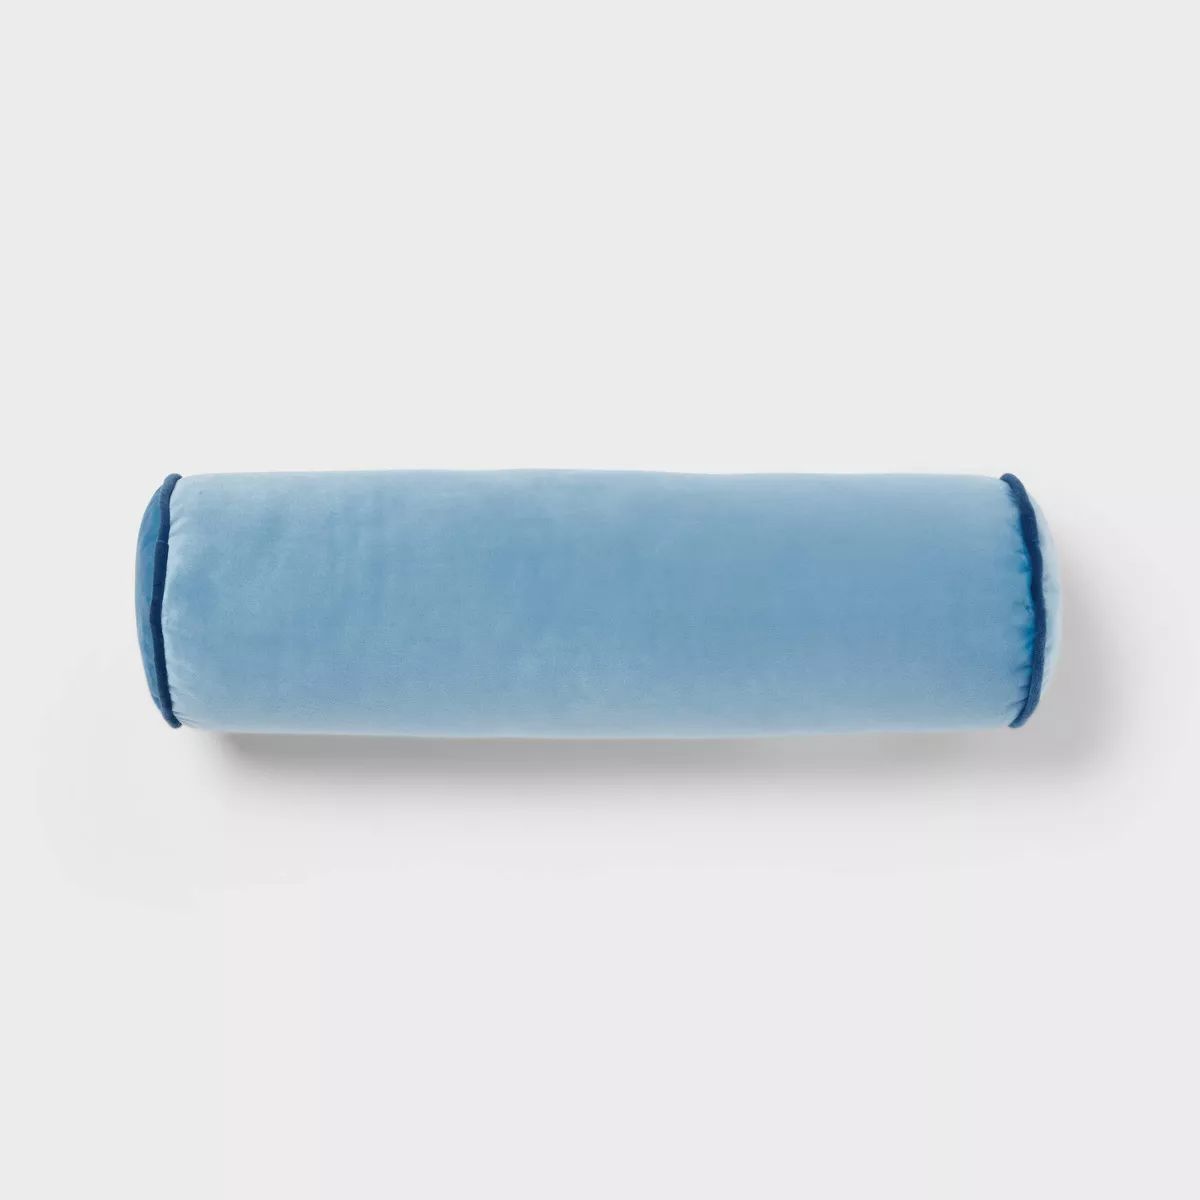 Round Bolster Kids' Pillow Blue - Pillowfort™ | Target